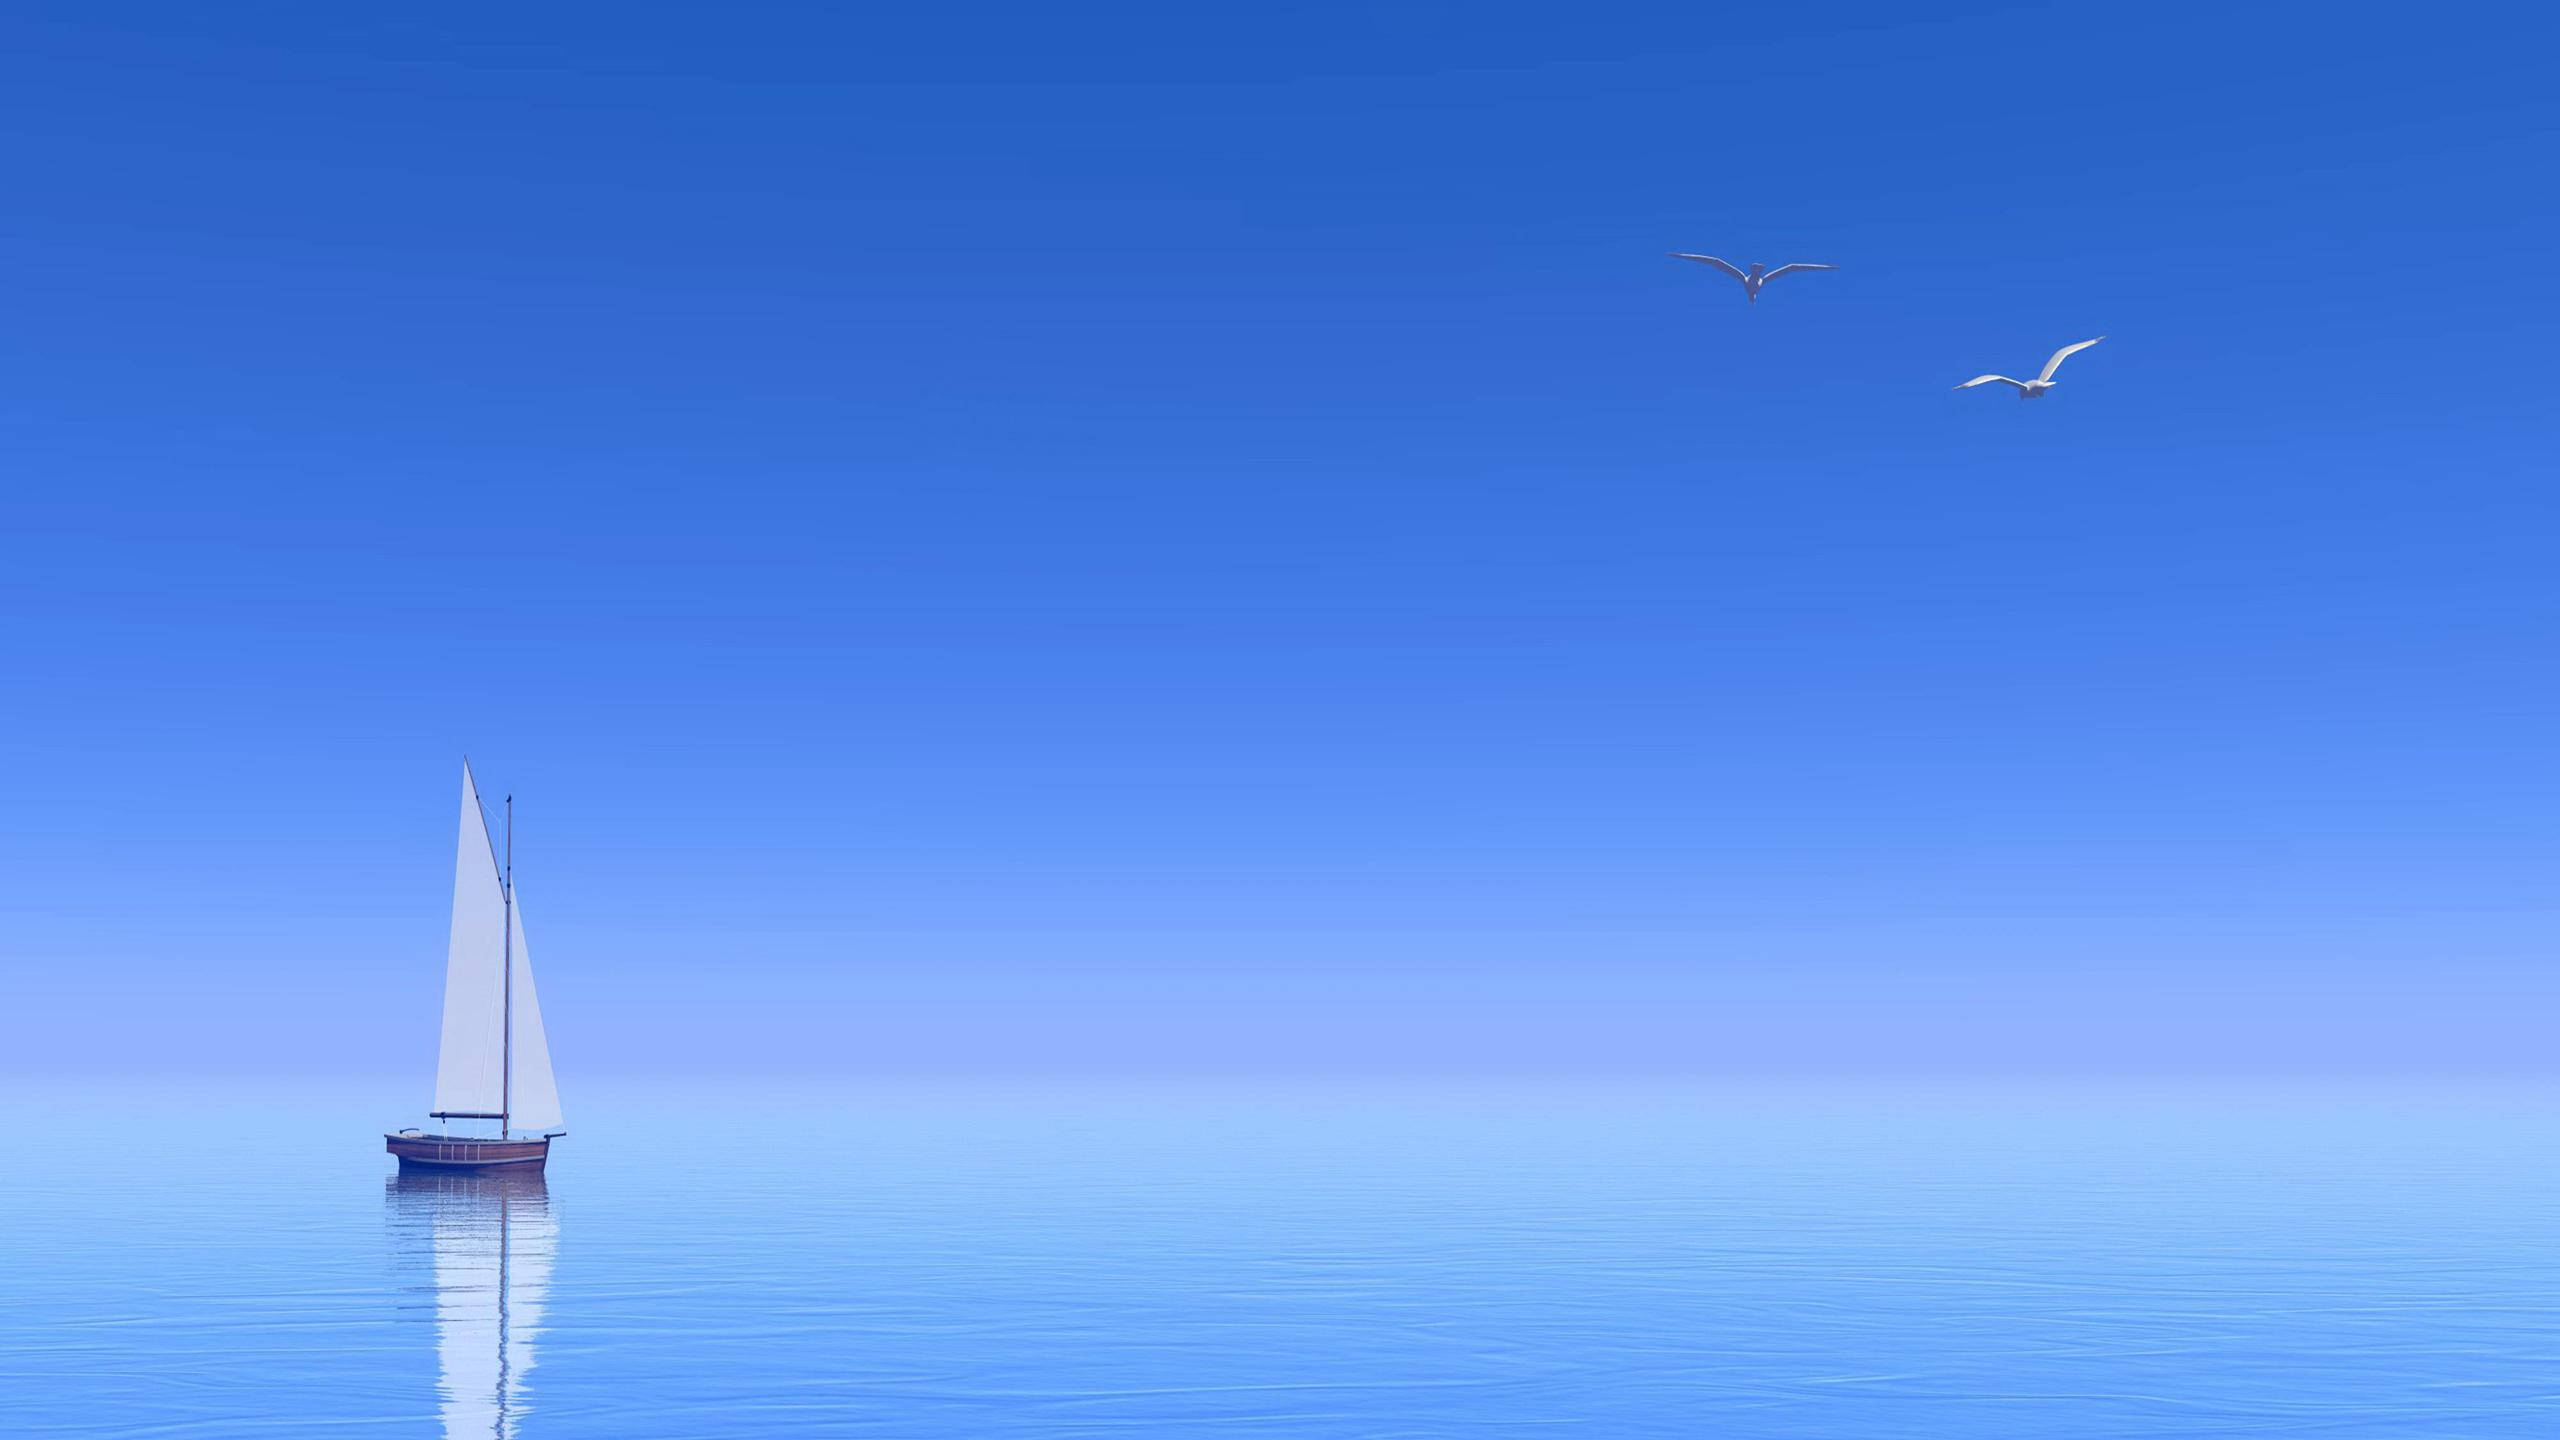 Hãy tải ngay hình nền Ultra HD tàu buồm trên biển cho laptop của bạn để trải nghiệm cảm giác du ngoạn giữa biển cả và trời xanh mượt mà. Hình ảnh sắc nét và đầy không gian, mang tới cho bạn không gian làm việc tươi mới mỗi ngày. 